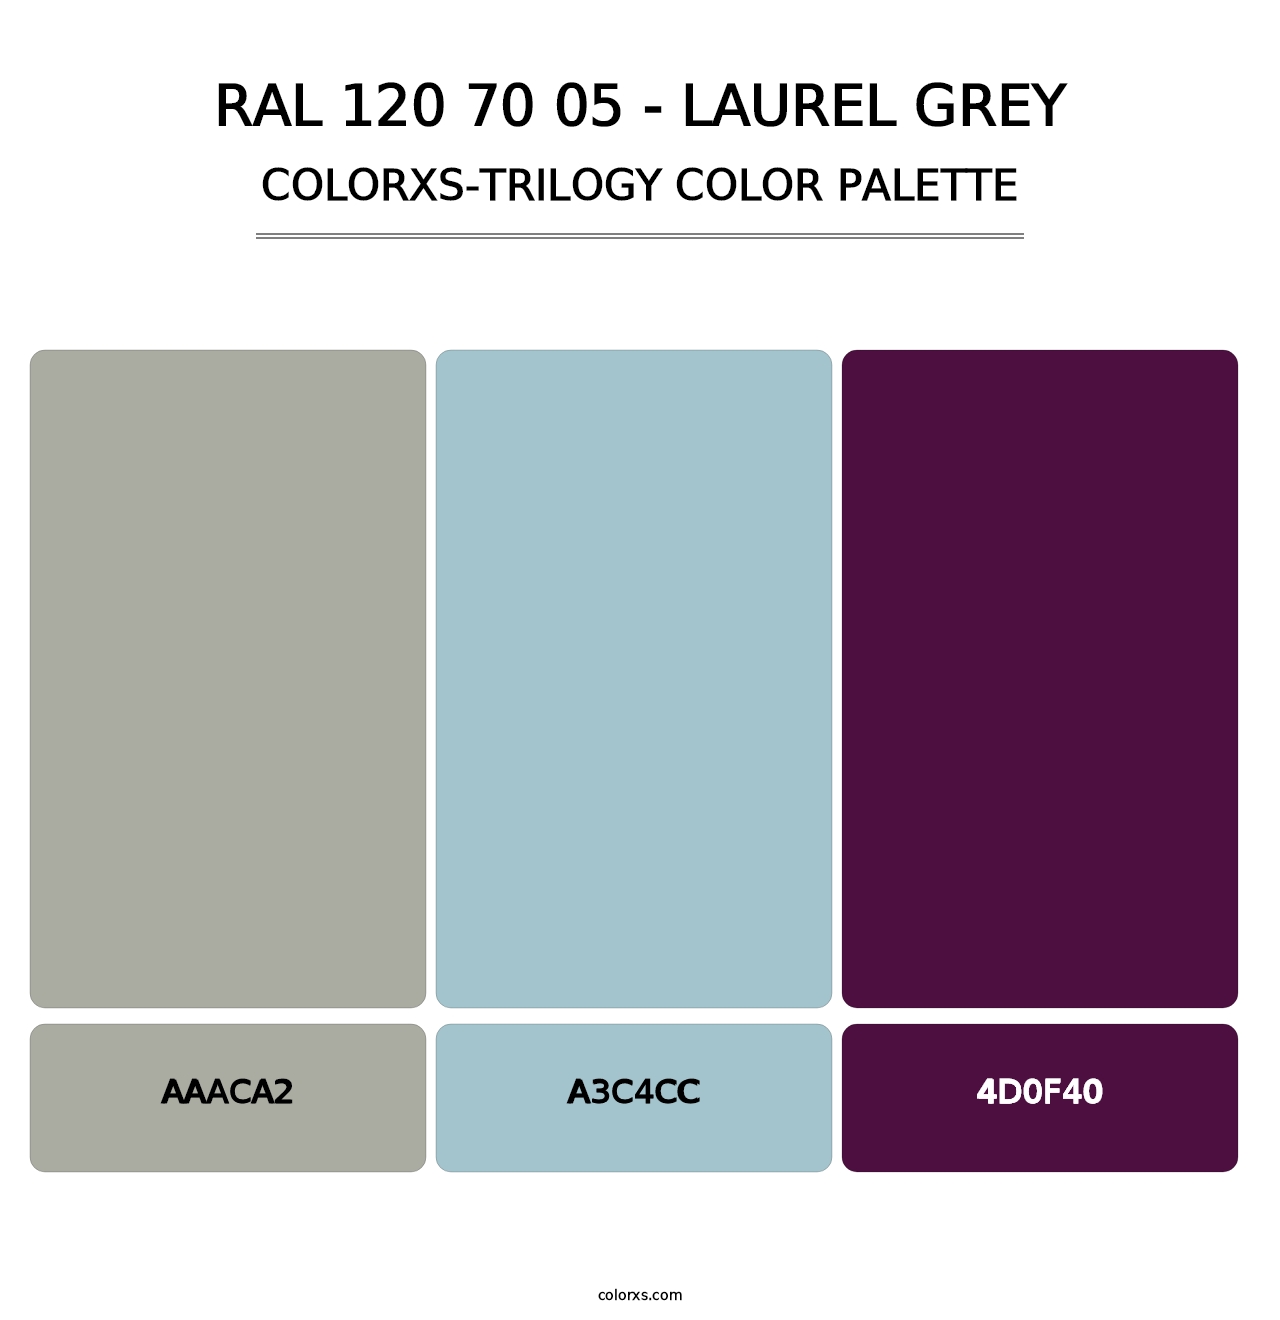 RAL 120 70 05 - Laurel Grey - Colorxs Trilogy Palette